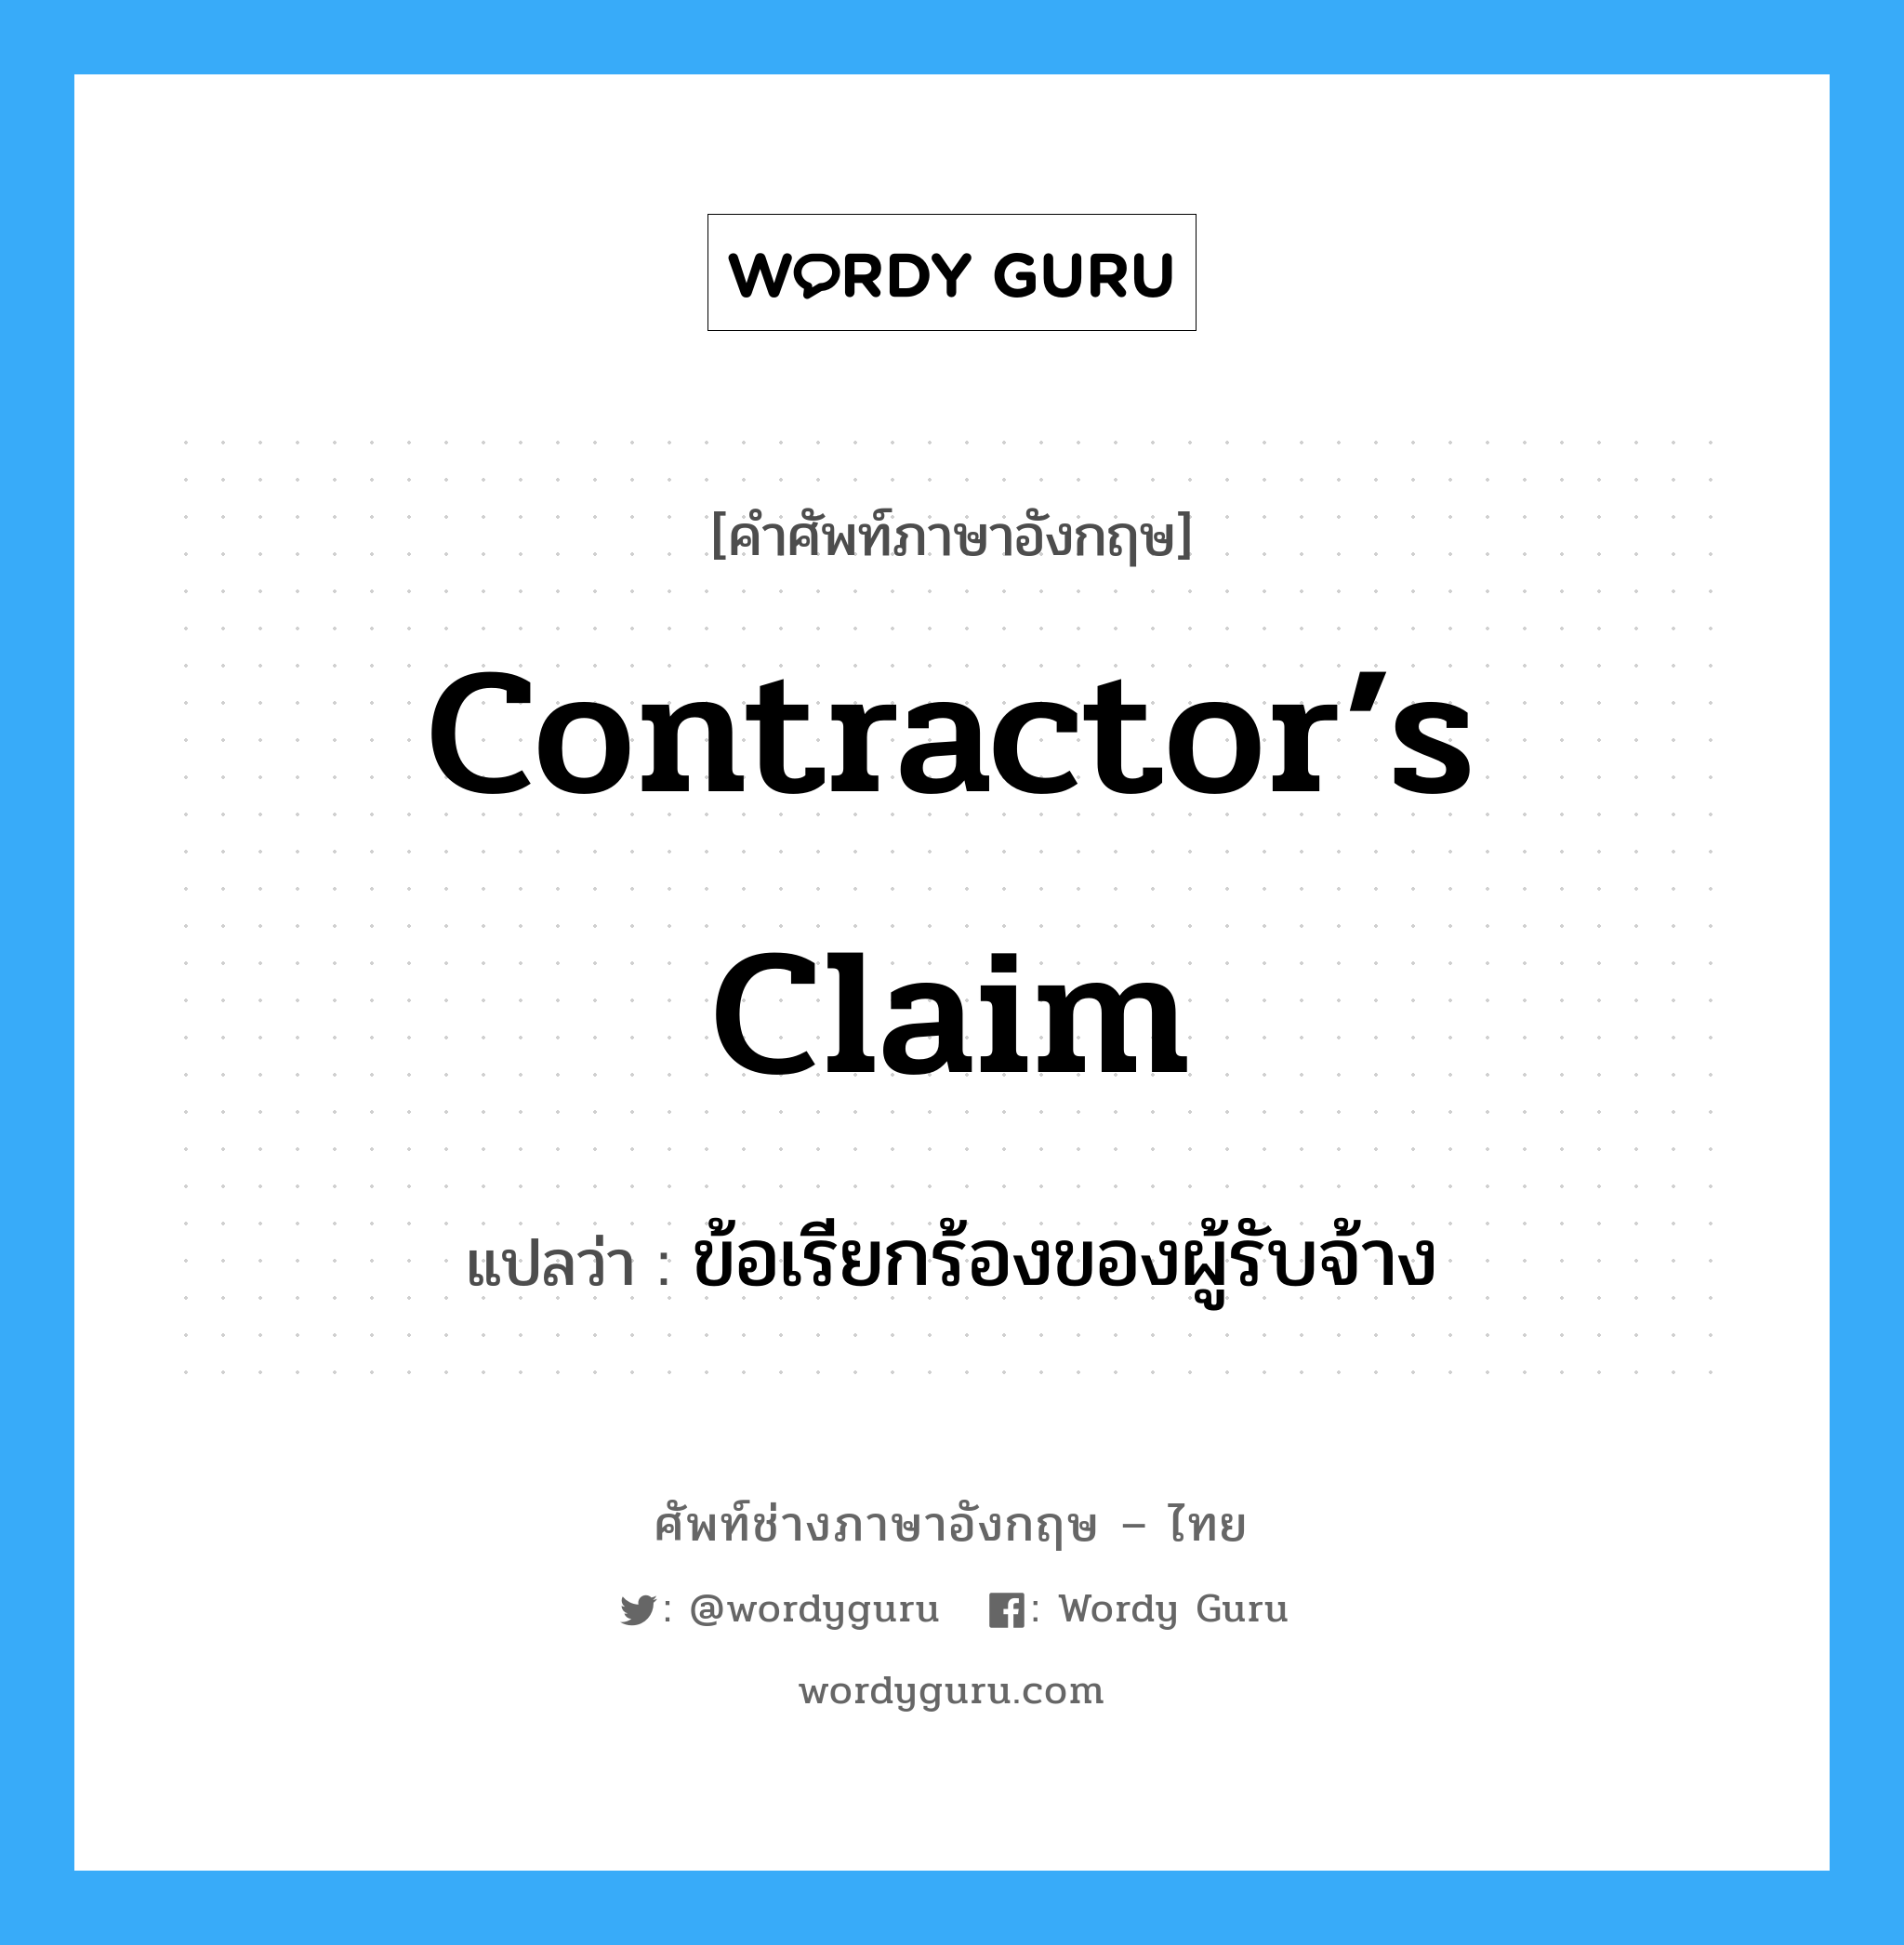 Contractor’s Claim แปลว่า?, คำศัพท์ช่างภาษาอังกฤษ - ไทย Contractor’s Claim คำศัพท์ภาษาอังกฤษ Contractor’s Claim แปลว่า ข้อเรียกร้องของผู้รับจ้าง